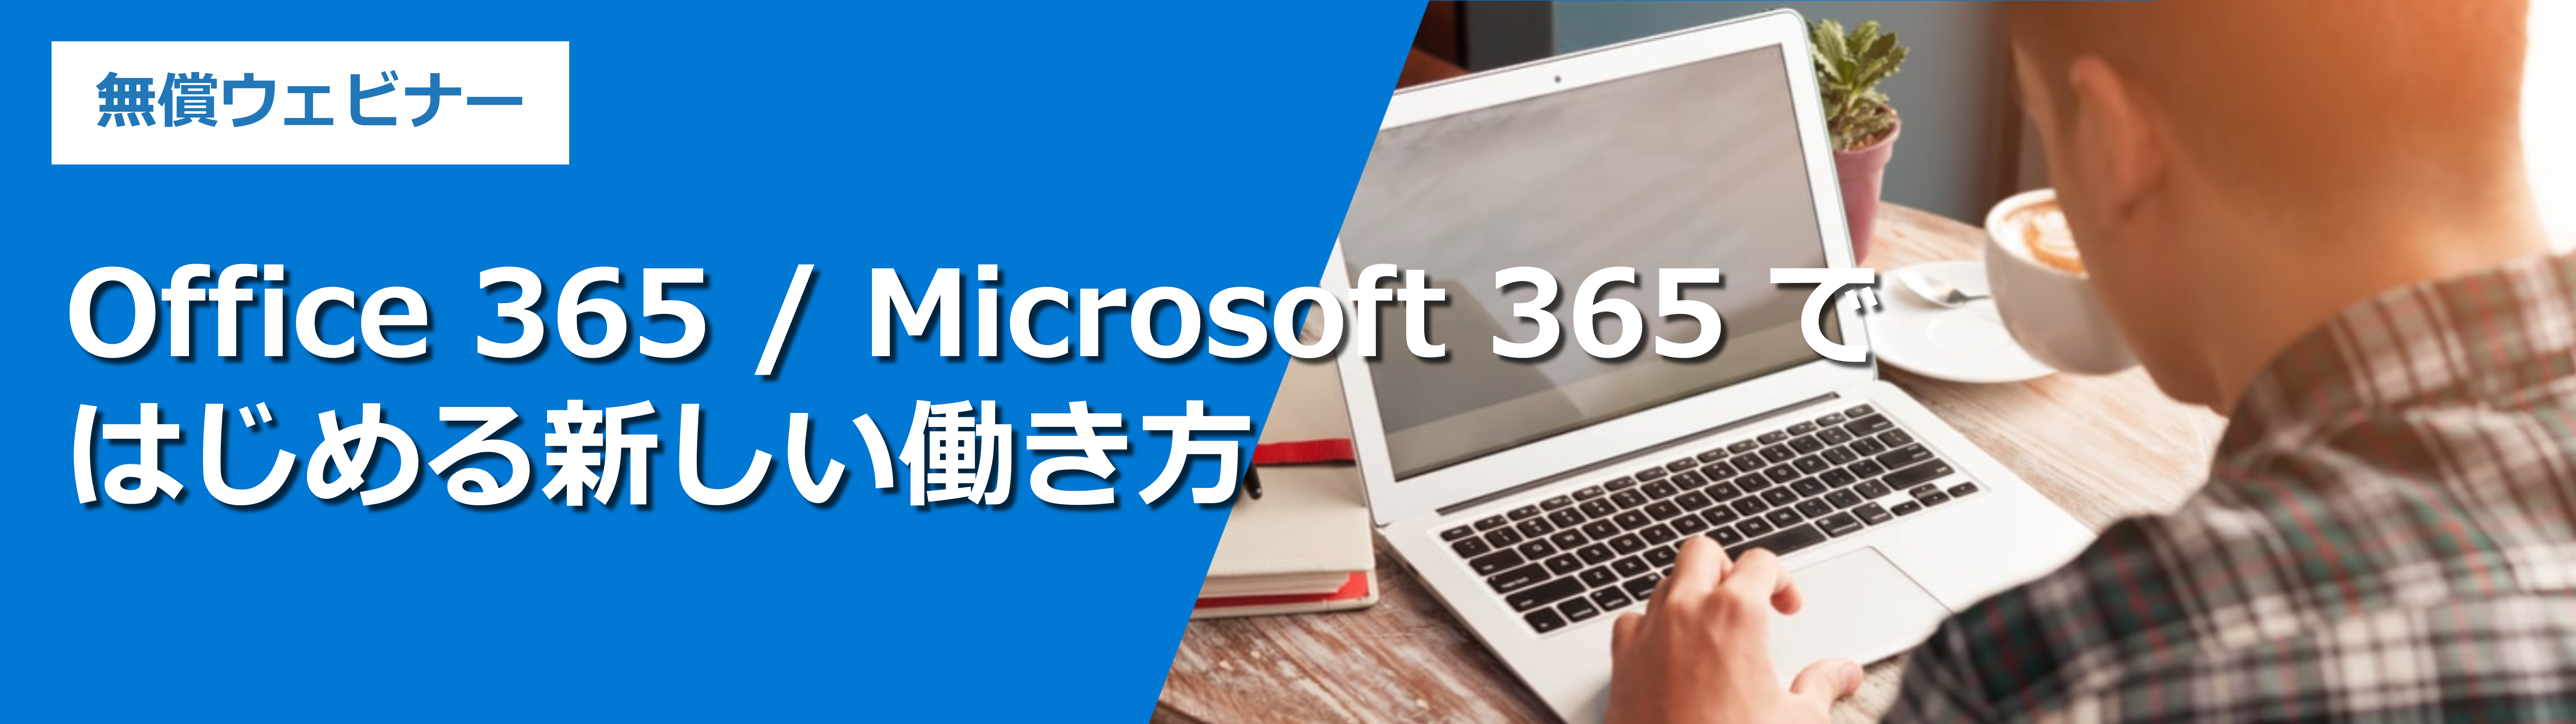 Office 365 / Microsoft 365 ではじめる新しい働き方